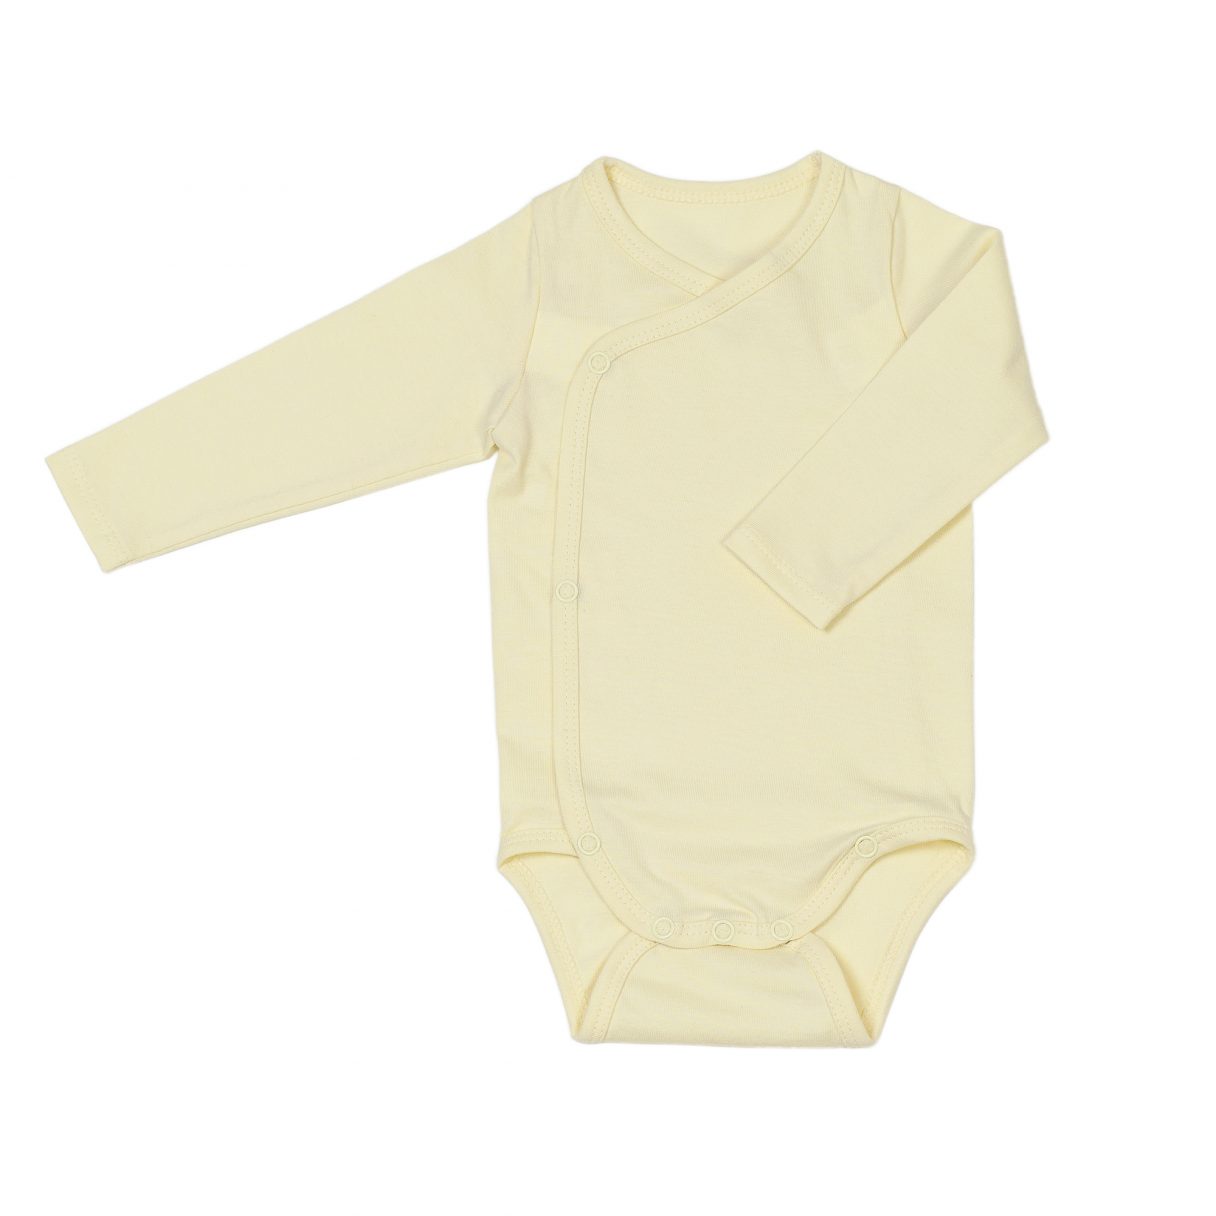 Newborn organic cotton baby bodysuit yellow